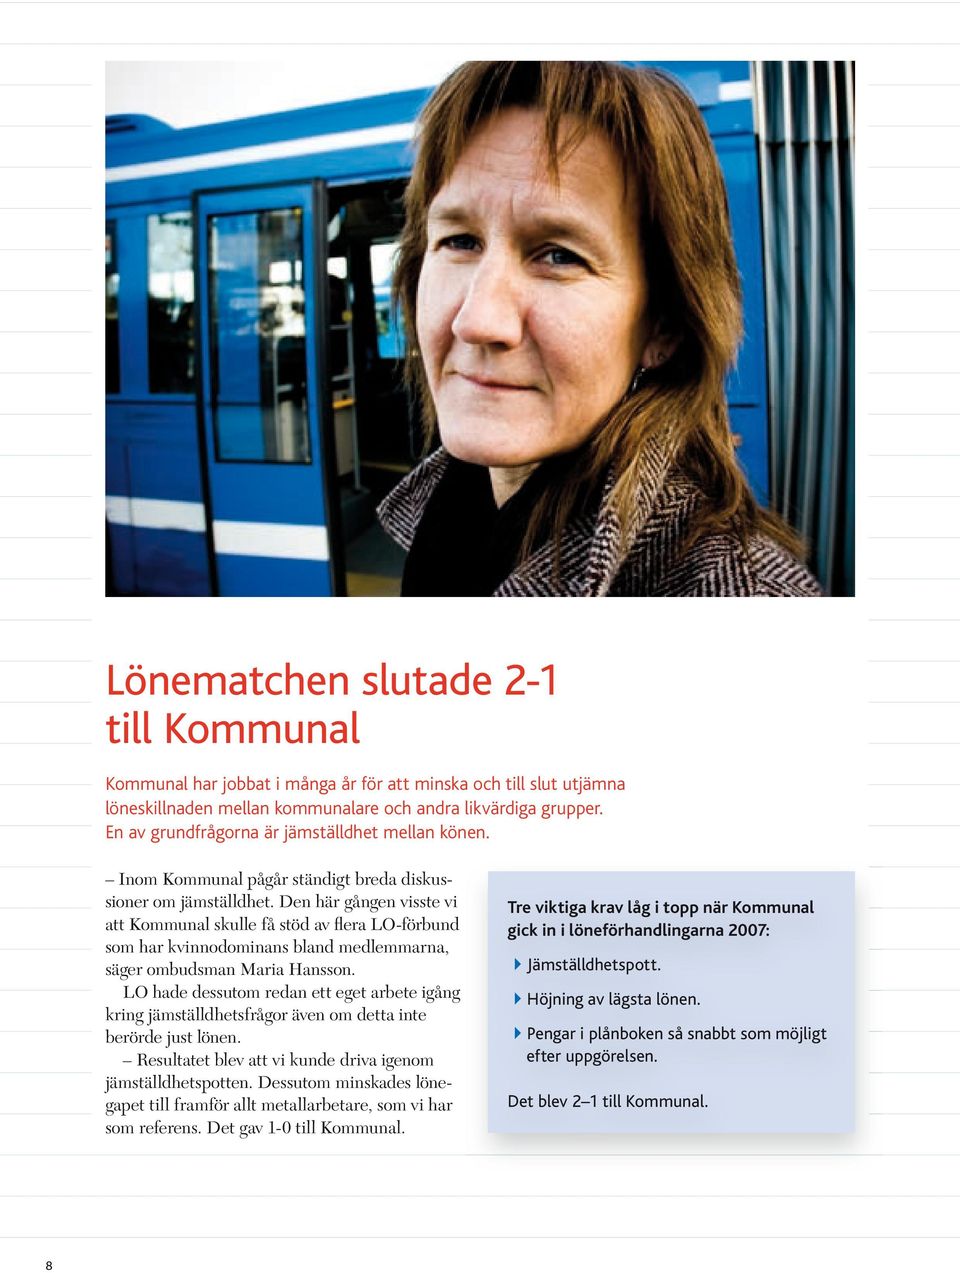 Den här gången visste vi att Kommunal skulle få stöd av flera LO-förbund som har kvinnodominans bland medlemmarna, säger ombudsman Maria Hansson.